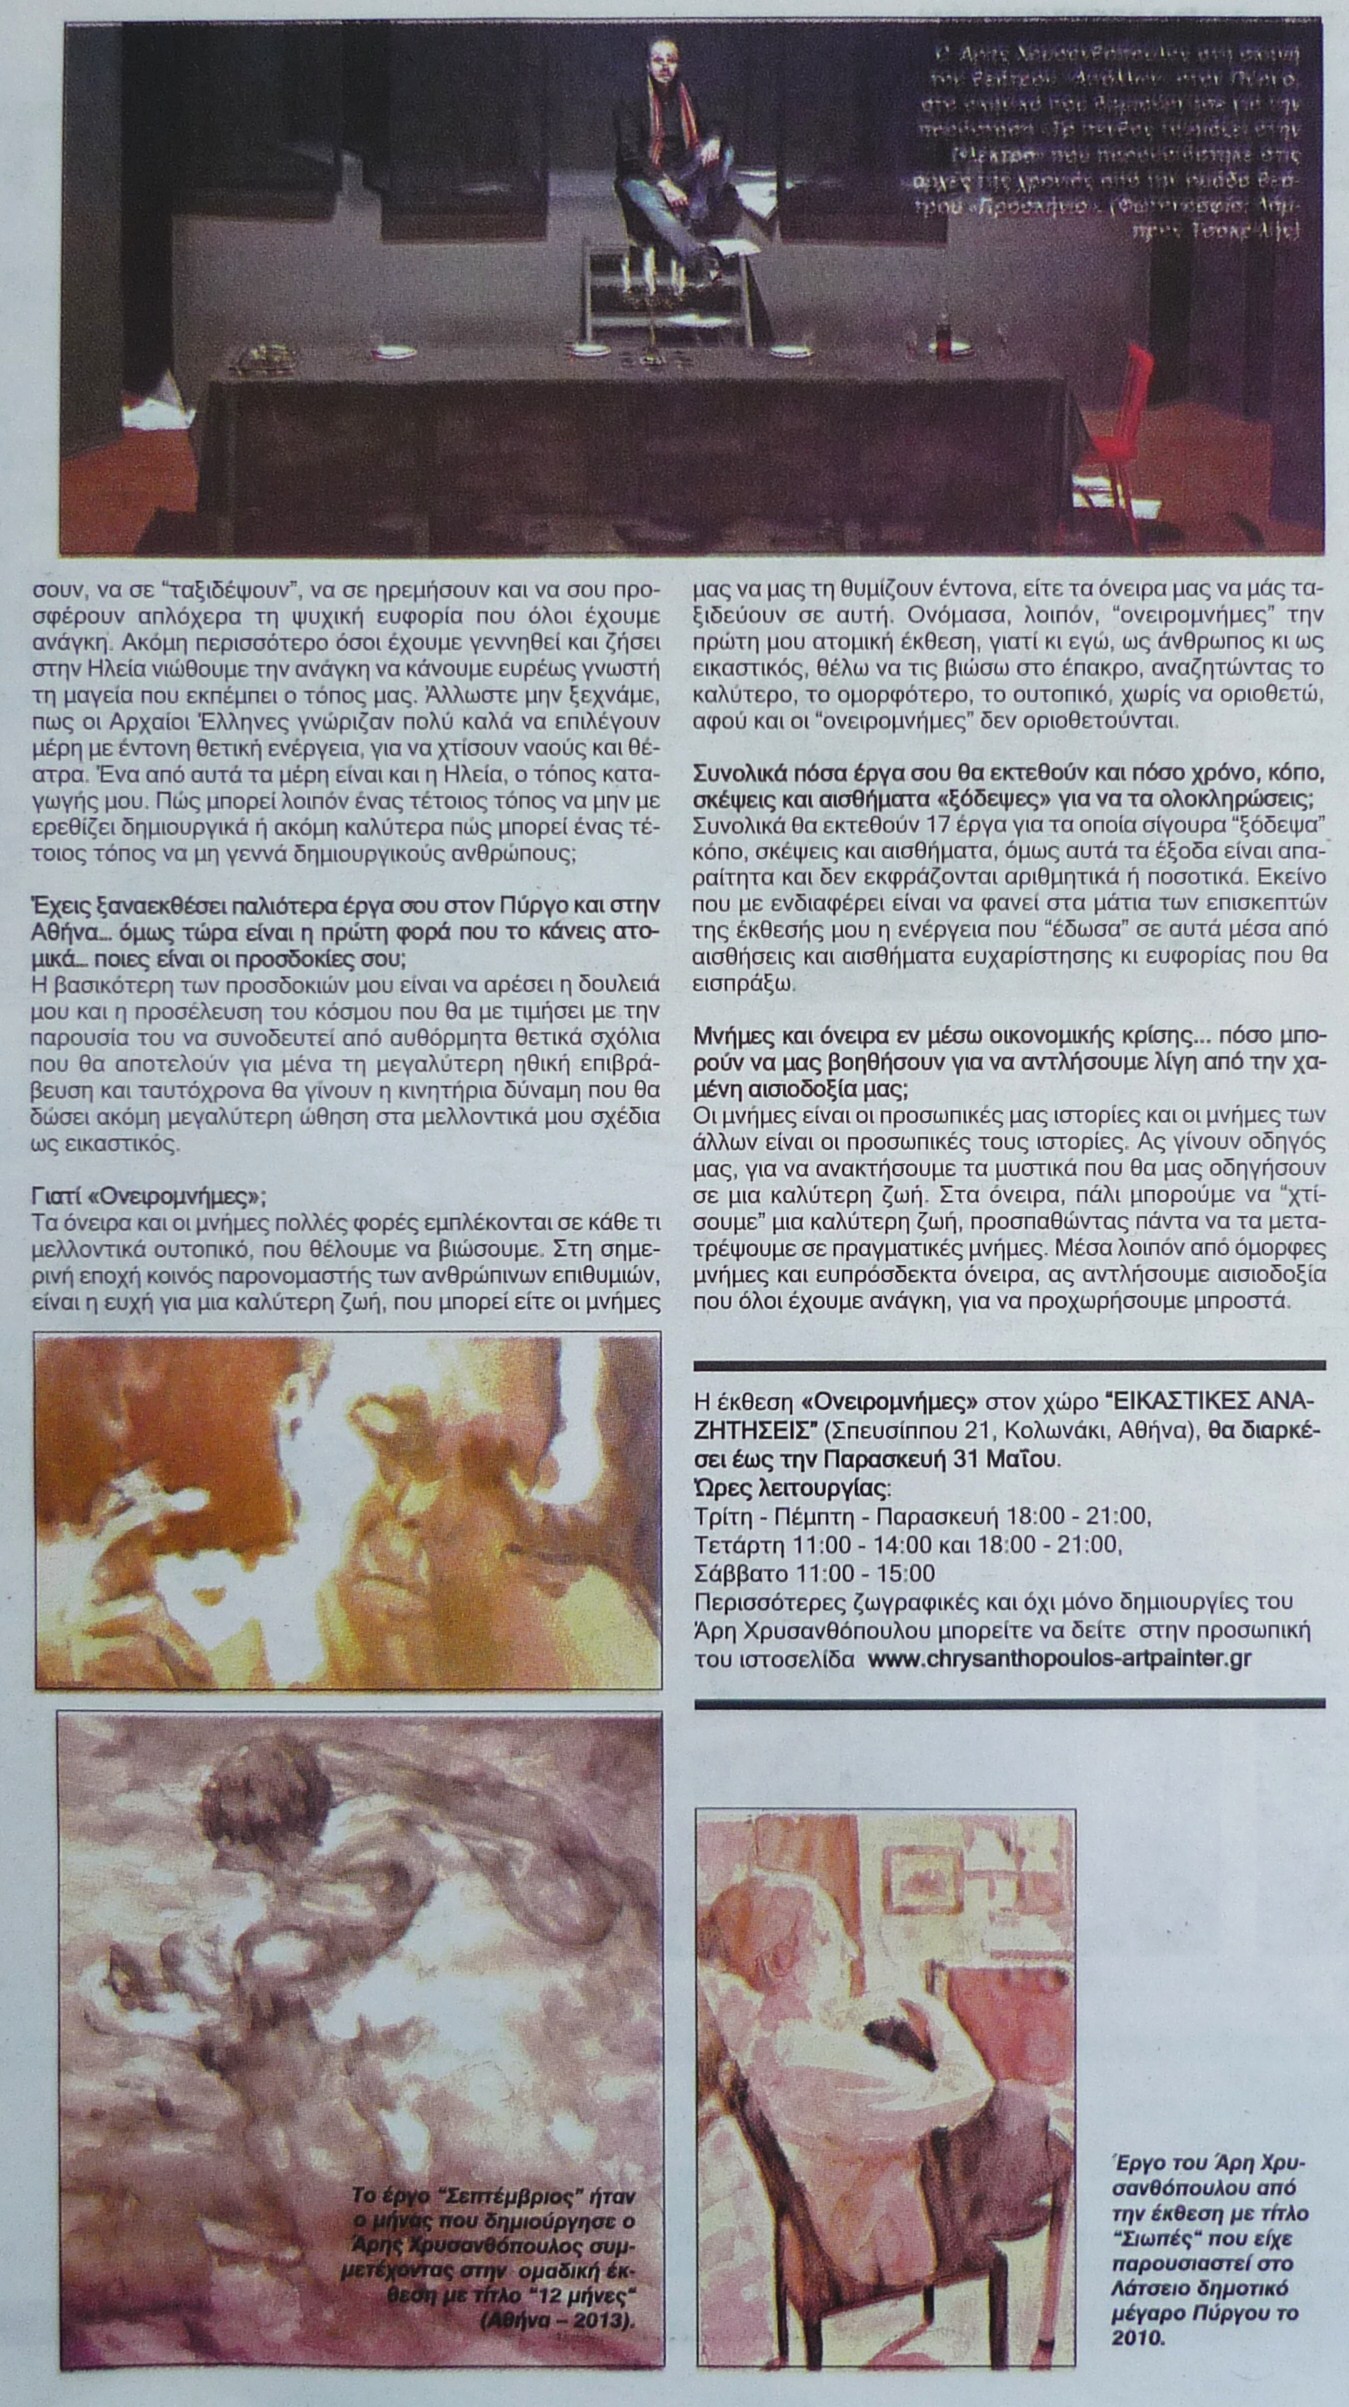 Εφημερίδα ΠΑΤΡΙΣ, 04-05-2013 (2)